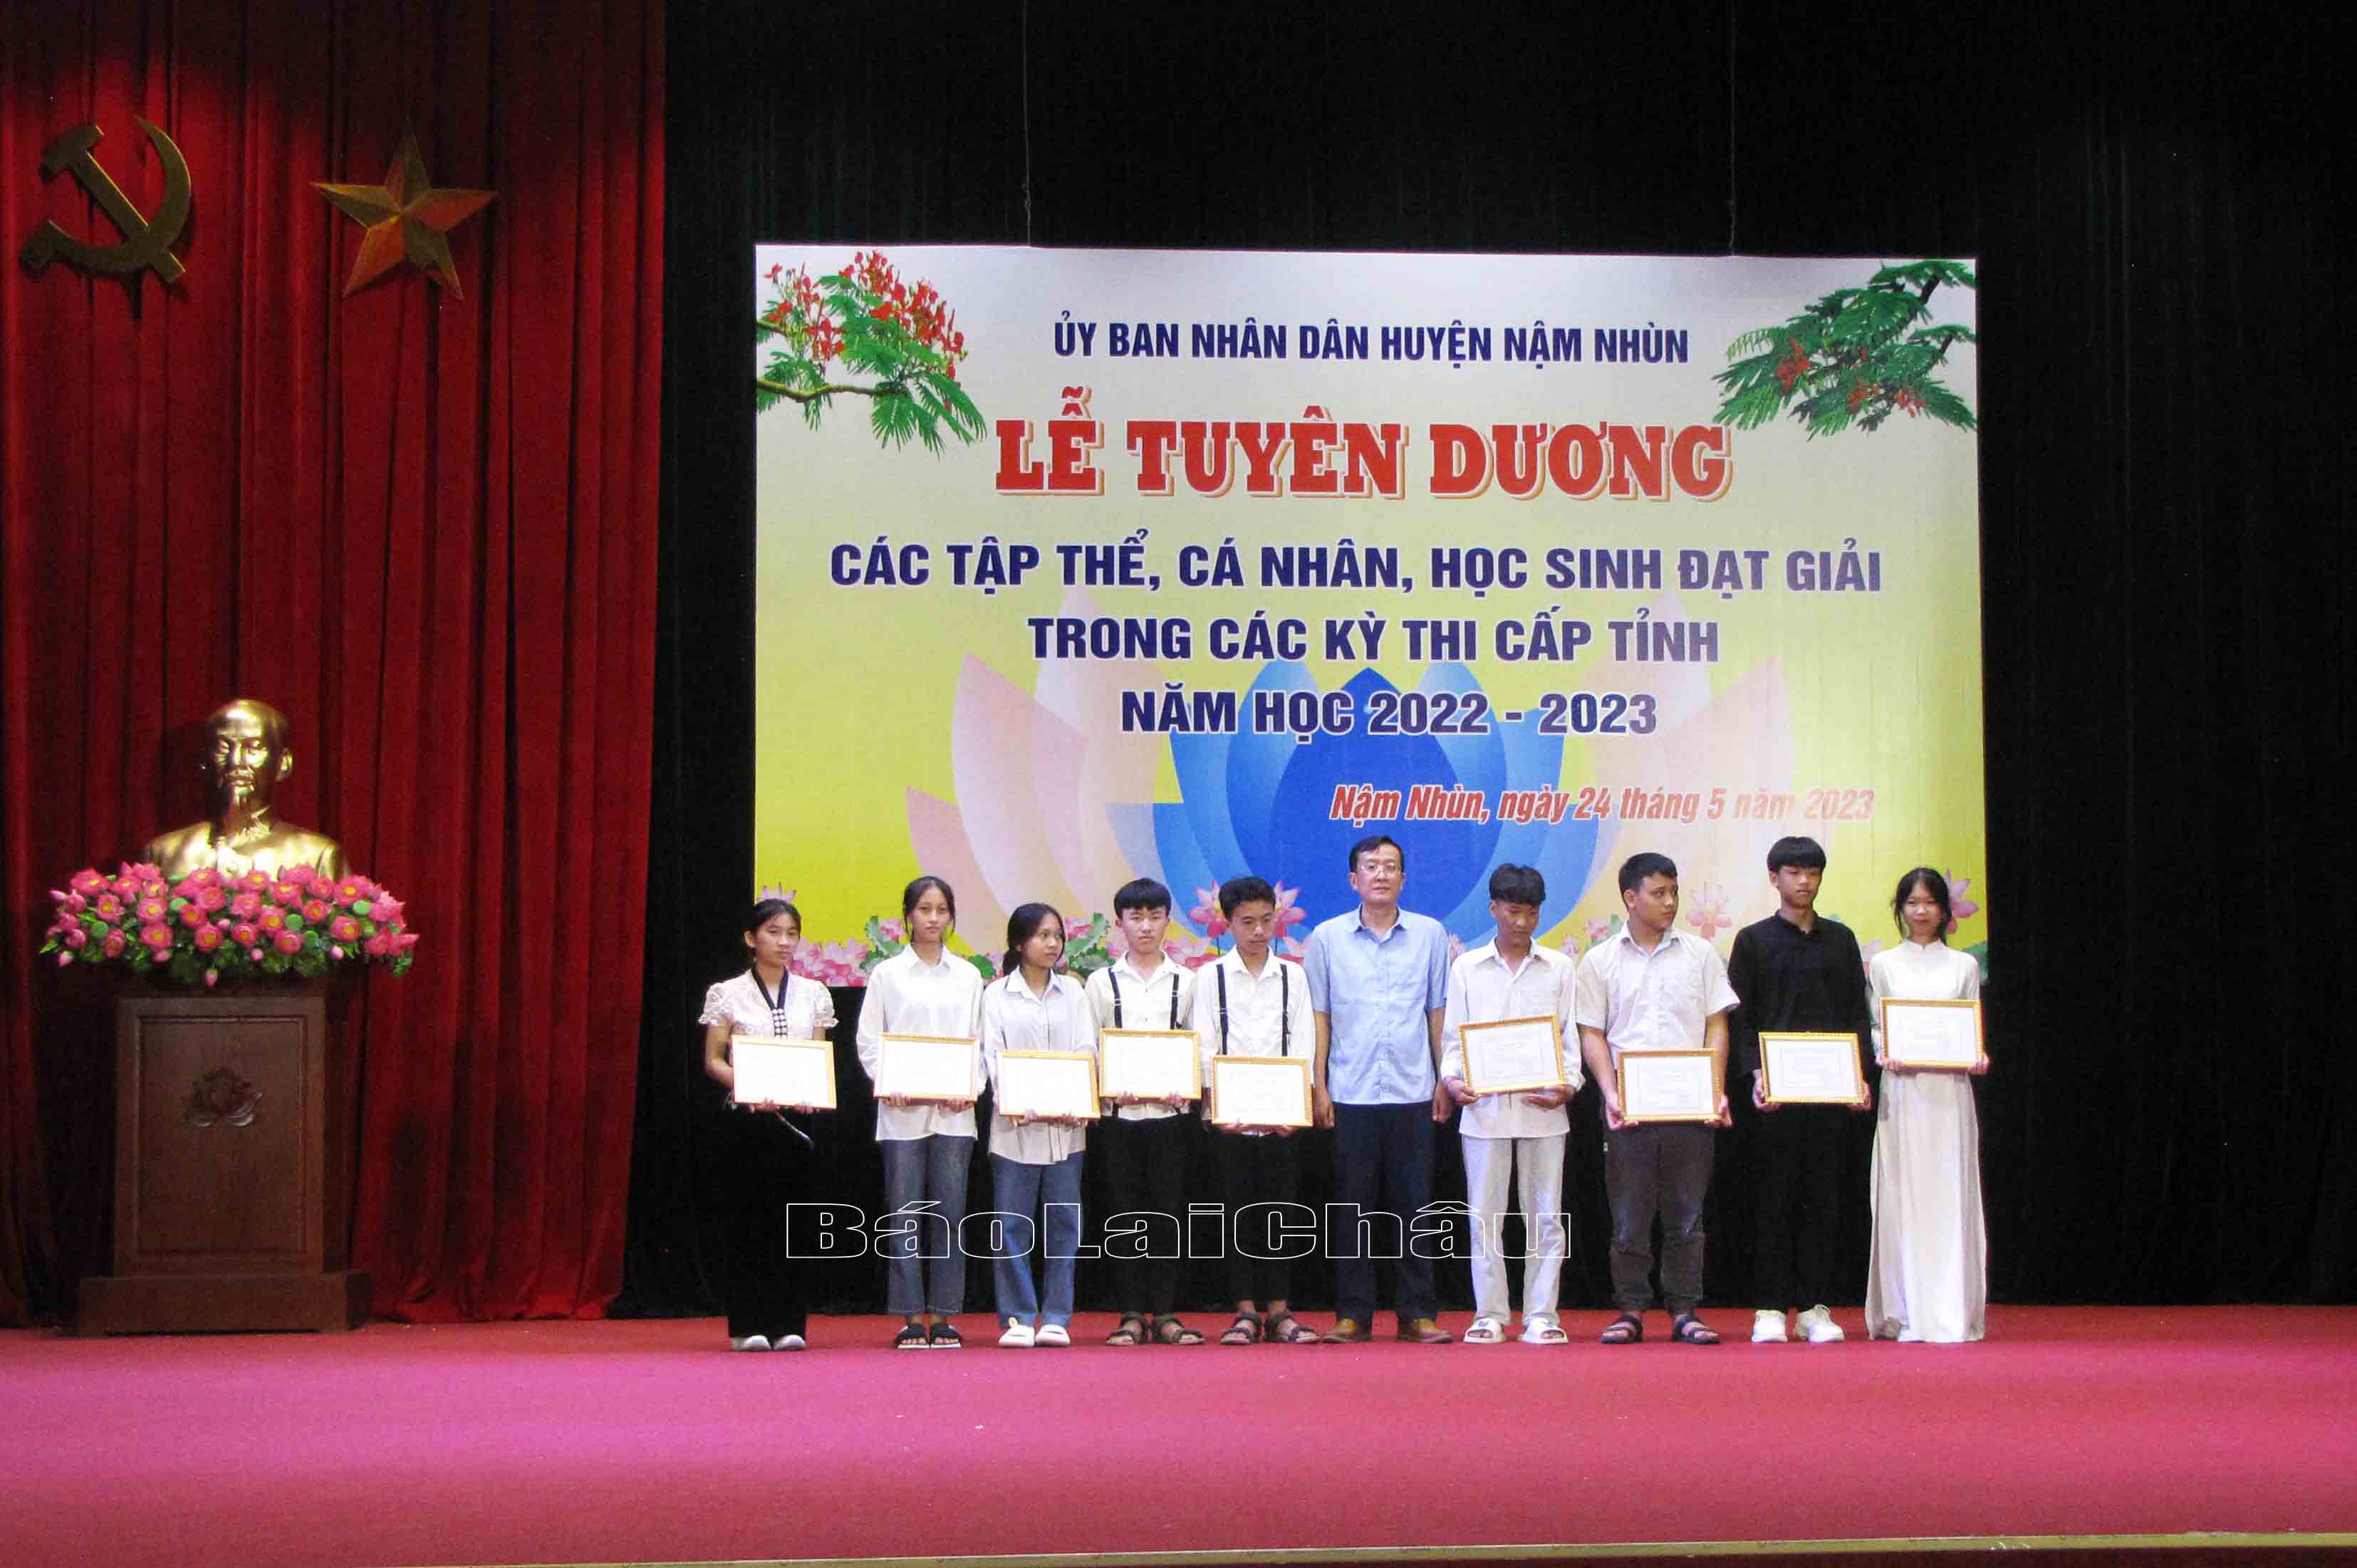 Đồng chí Lù Văn Quân – Phó Bí thư Thường thực Huyện ủy trao giấy chứng nhận cho các em học sinh có thành tích xuất sắc trong kỳ thi học sinh giỏi cấp tỉnh.